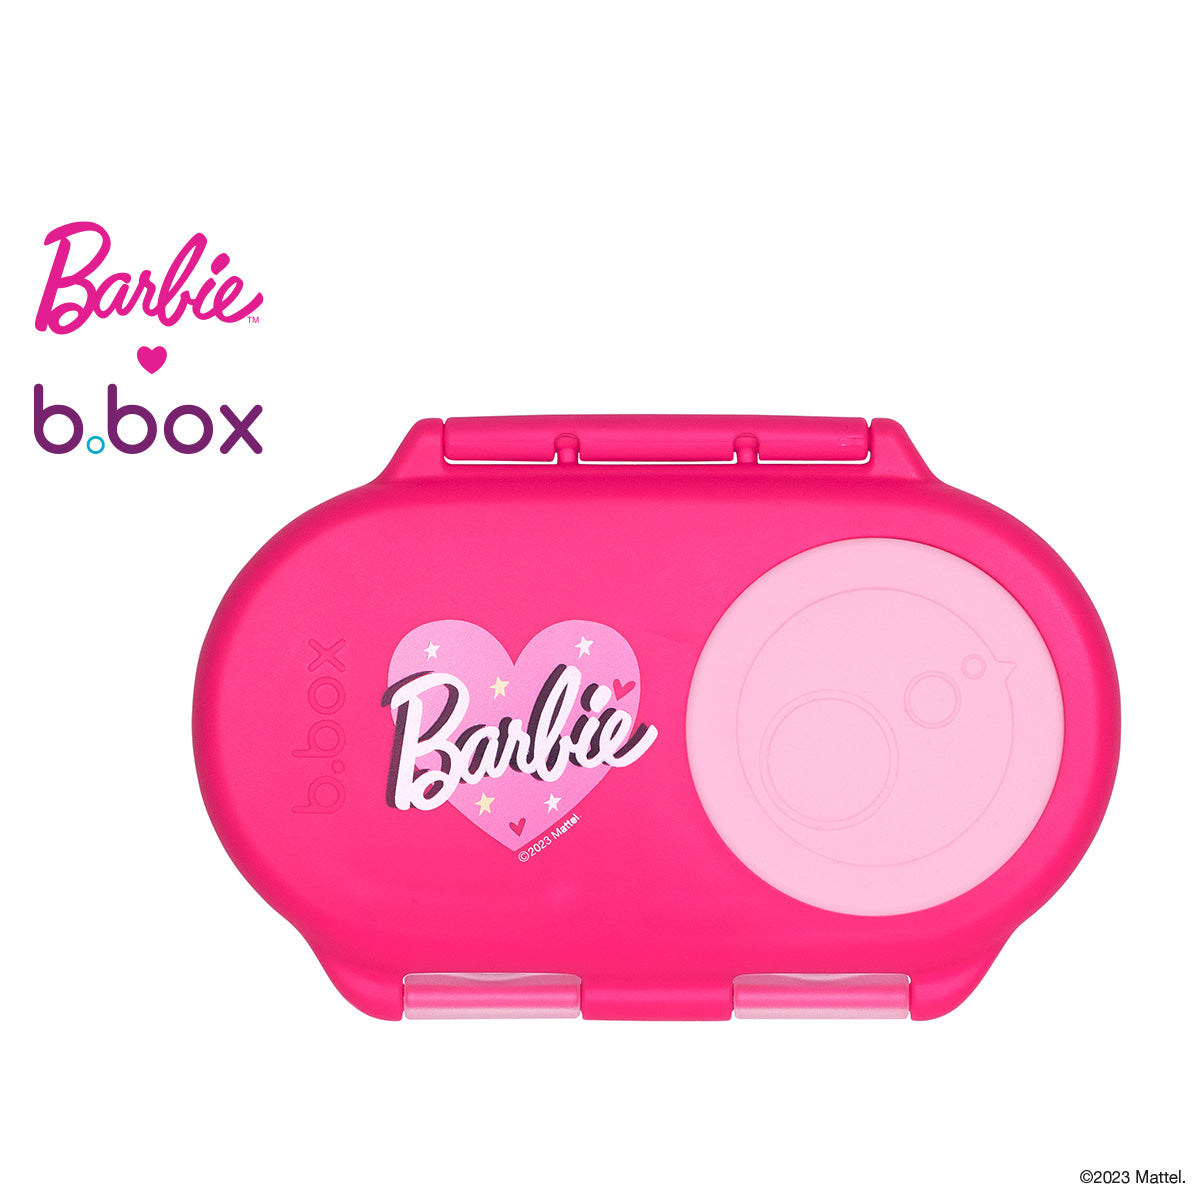 B Box - Lunch Box Mini - Barbie - Coastal Kidswear